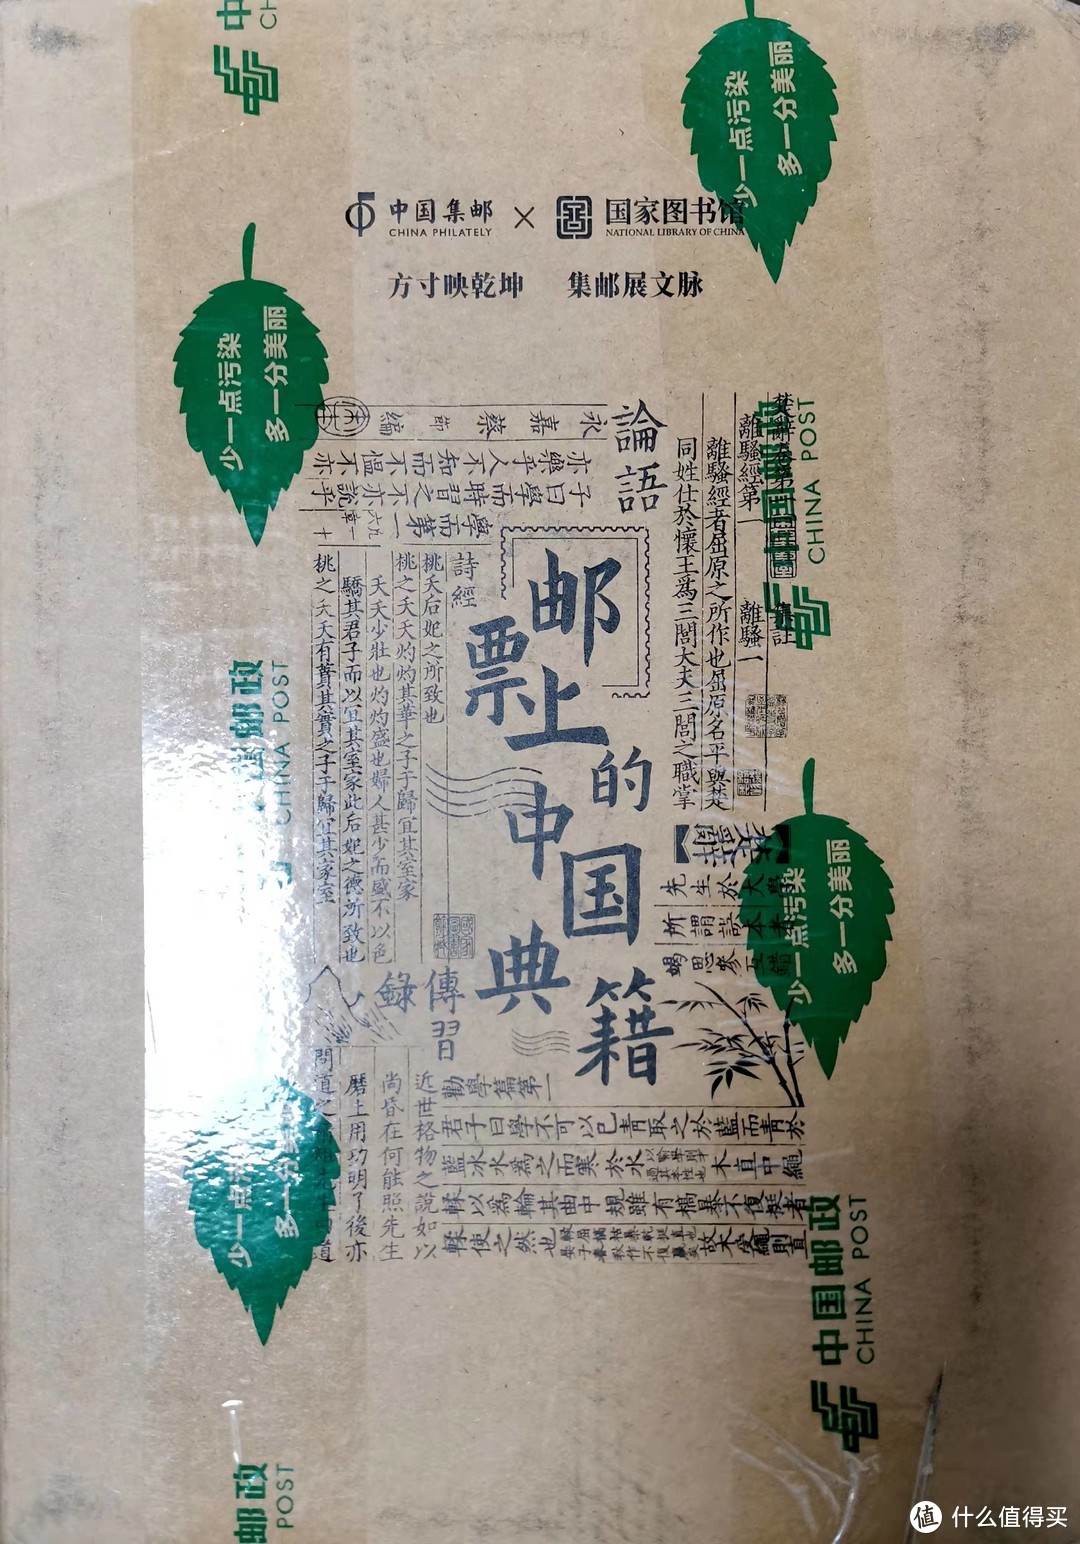 拿到手的是邮政特别的纸盒，纸盒上有中国邮政与国家图书馆的邮票上的中国典籍图案，还是比较精致。